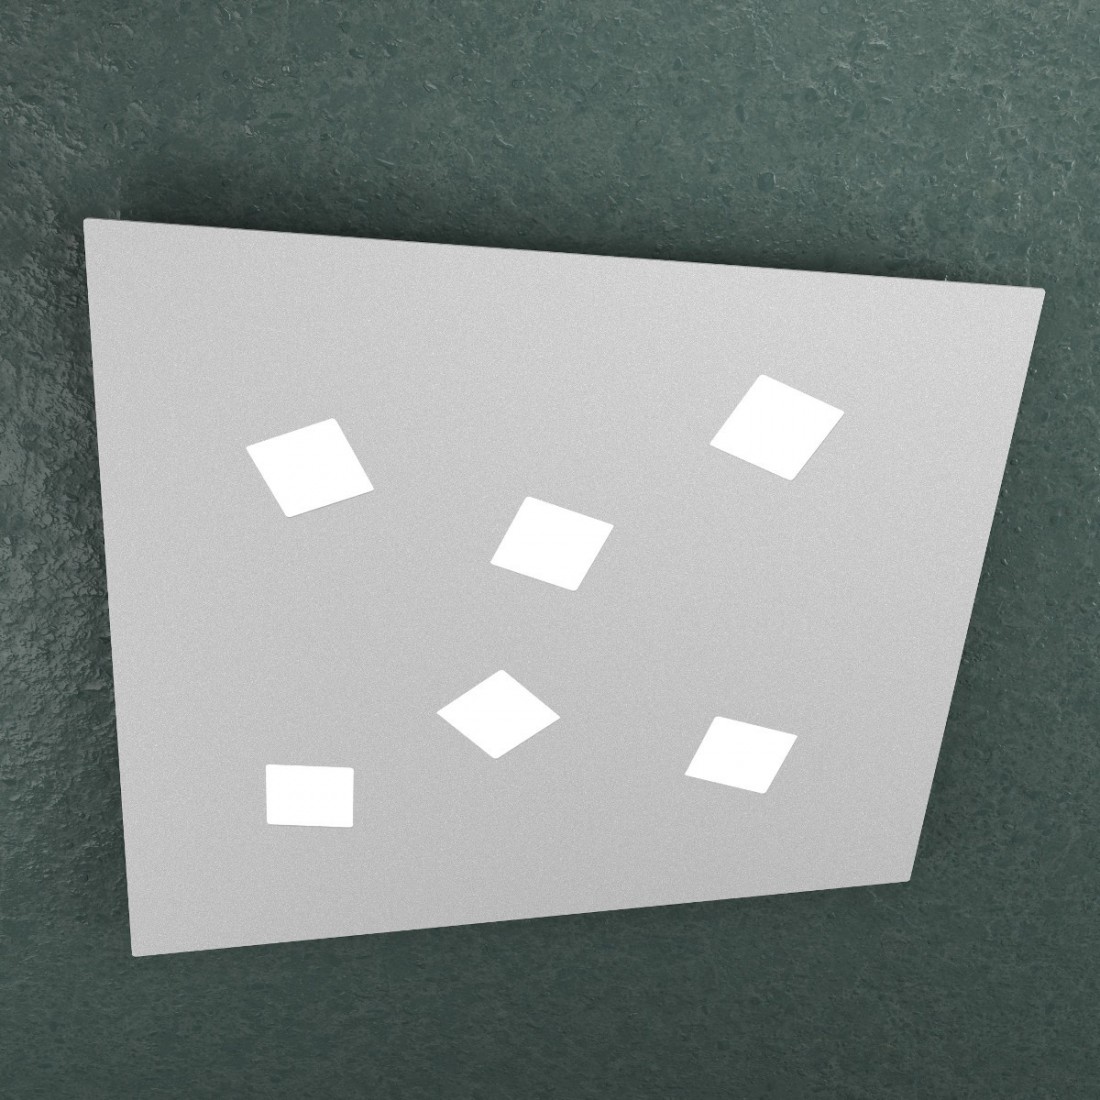 Plafoniera NOTE 1140 6 GX53 LED metallo bianco grigio sabbia lampada soffitto parete quadrata moderna interno